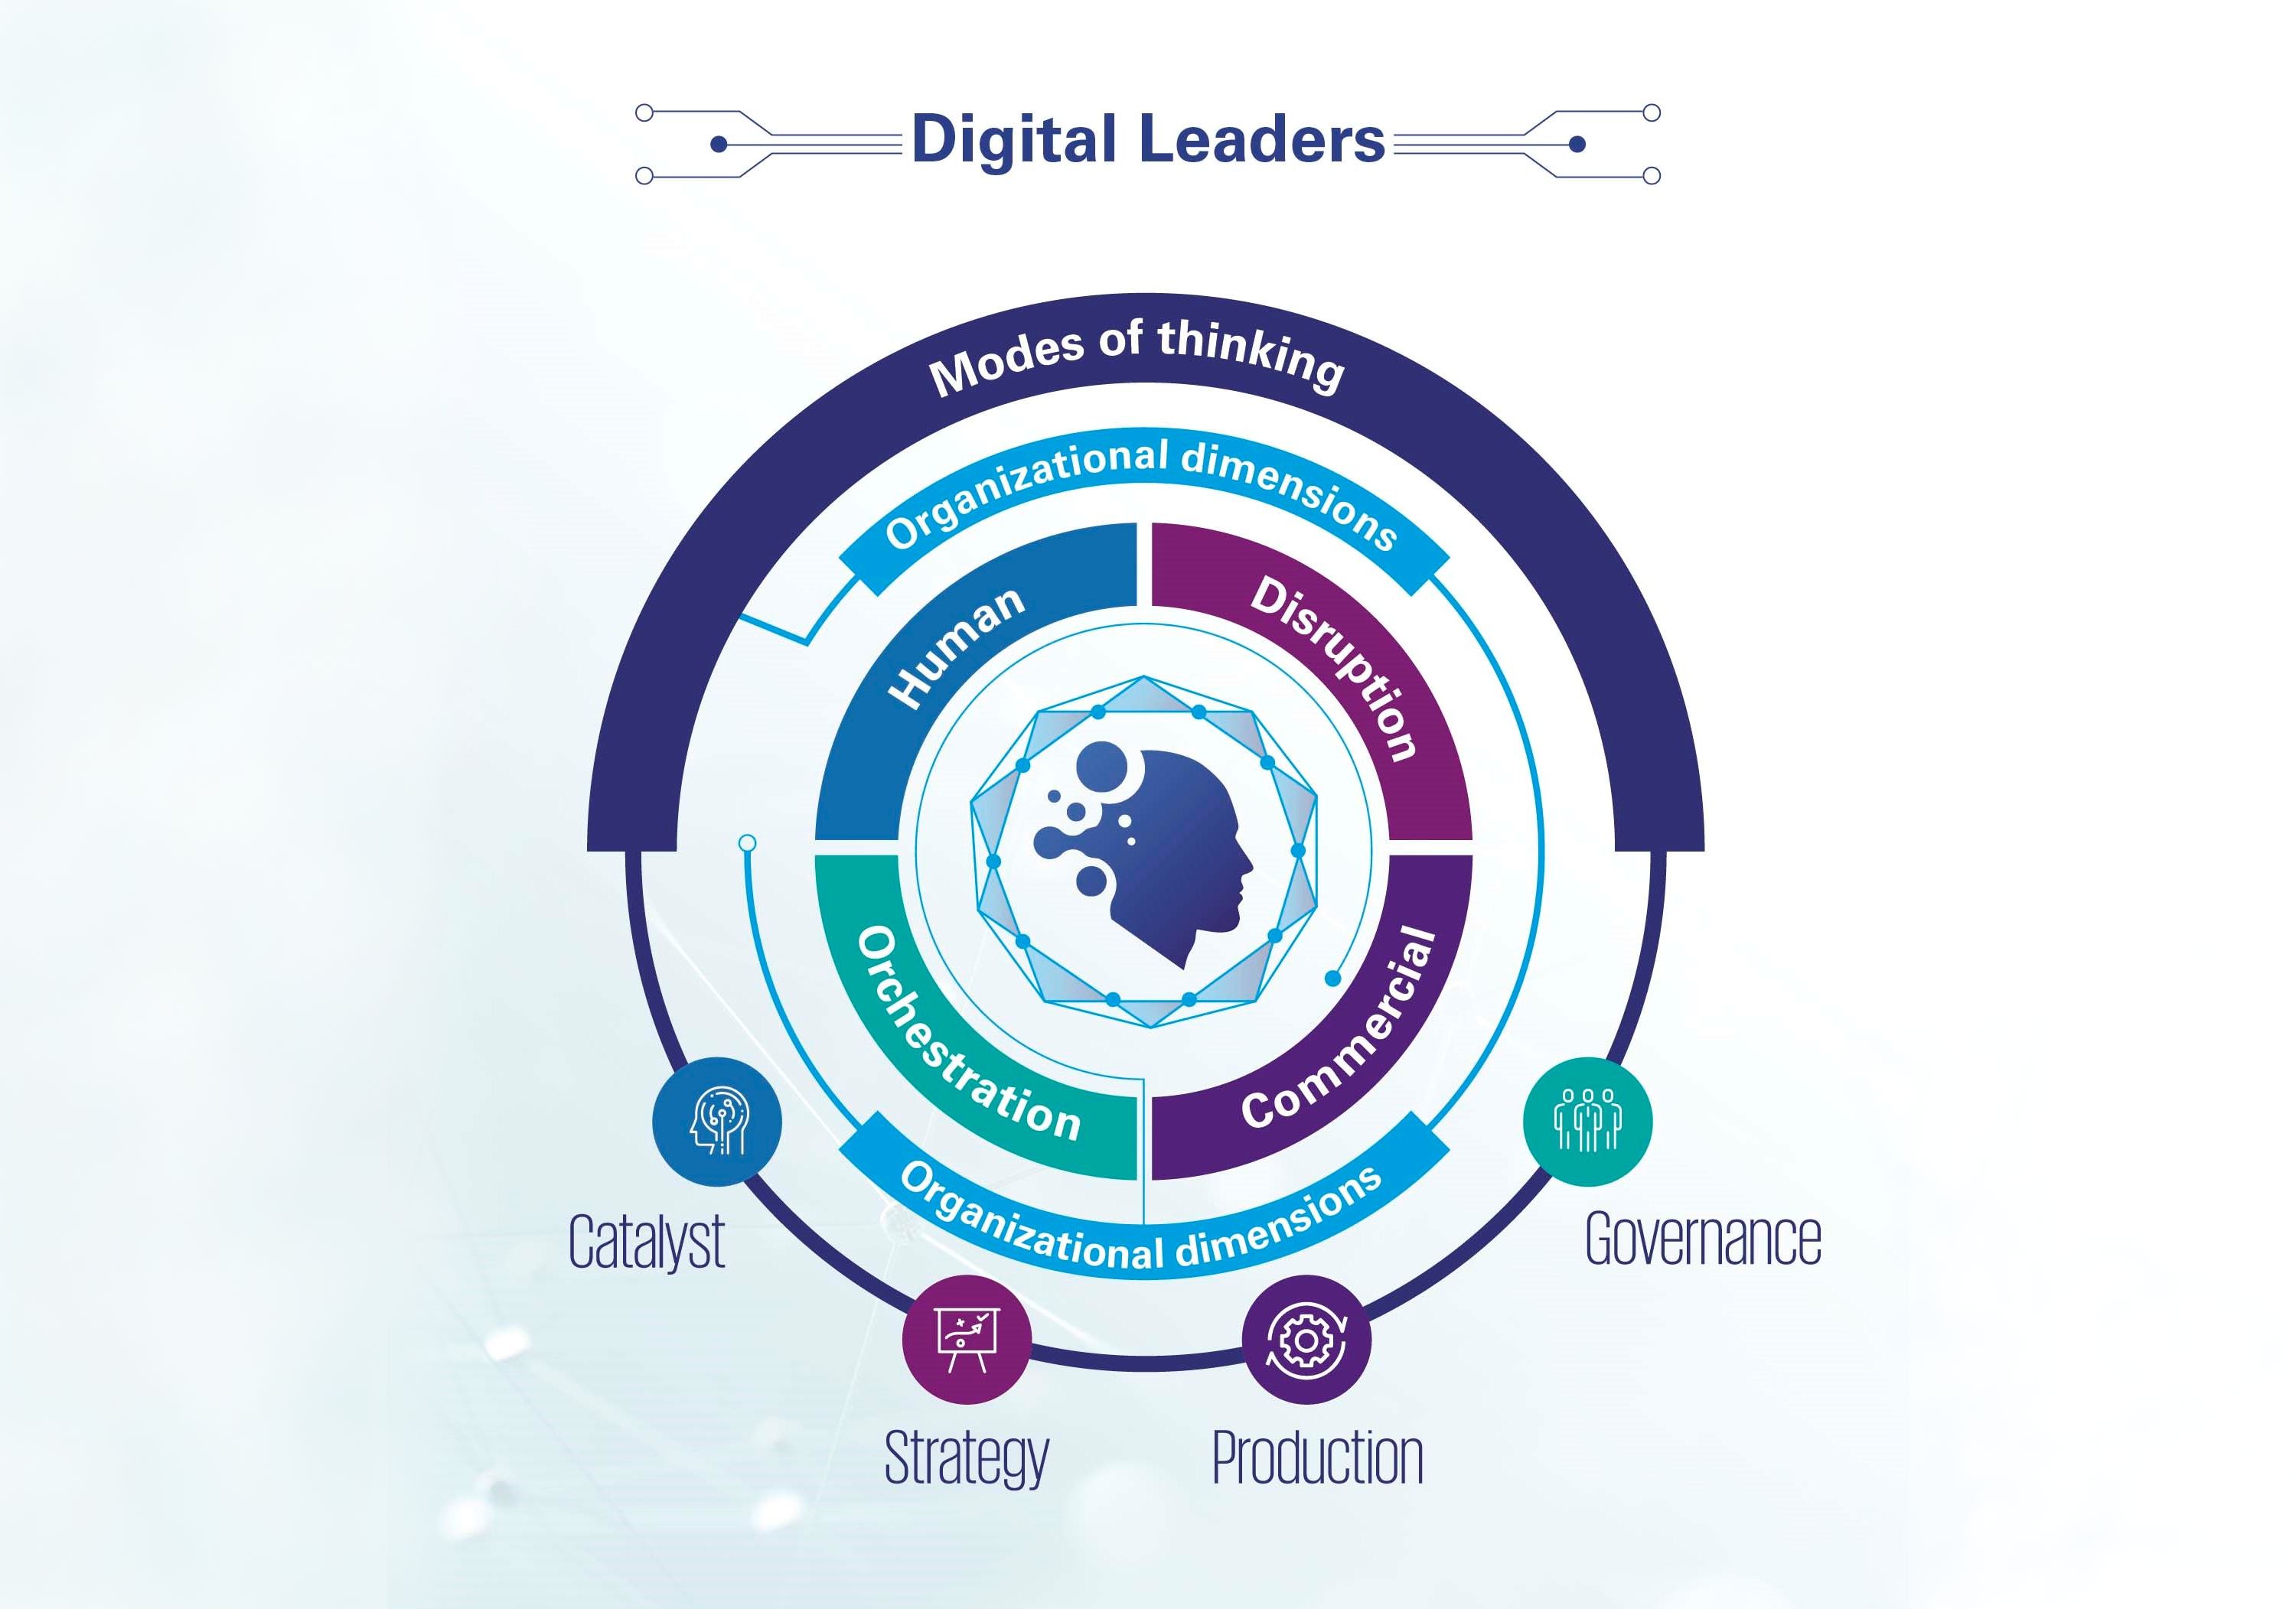 Digital leaders